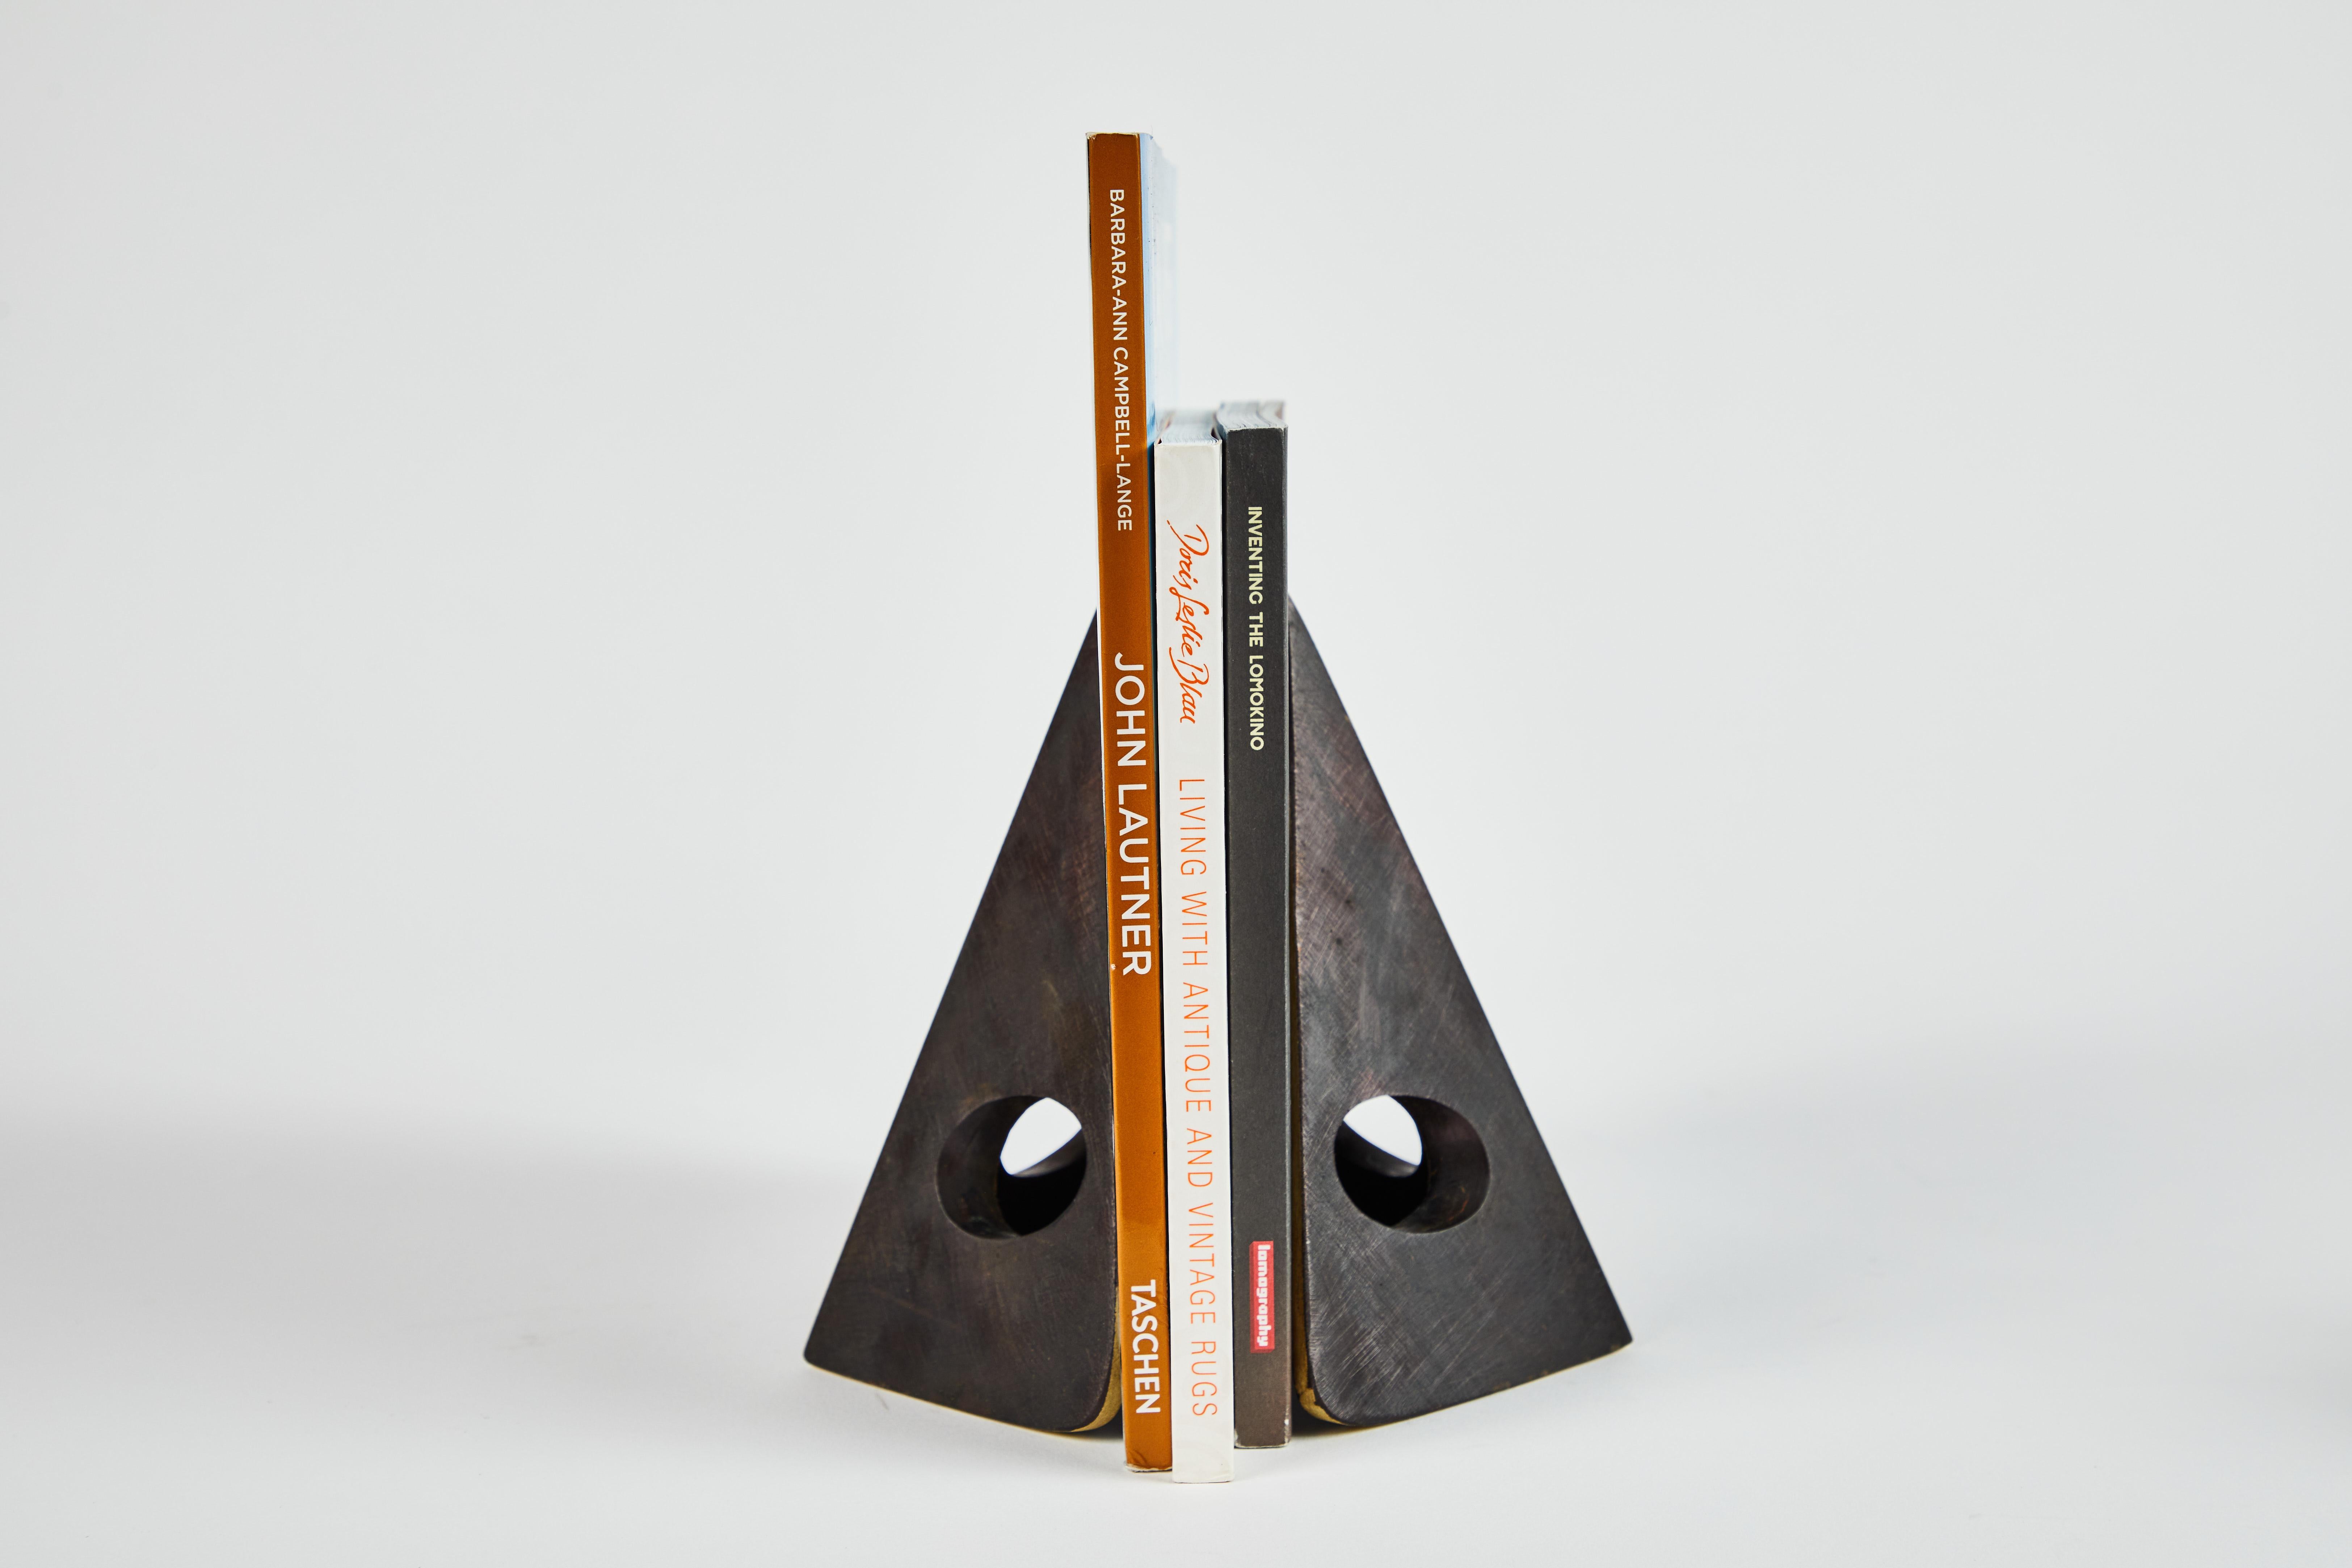 Paire de serre-livres en laiton patiné Carl Auböck modèle 4100. Conçue dans les années 1950, cette paire de serre-livres incroyablement raffinée et sculpturale est exécutée en laiton patiné. 

Le prix correspond à la paire. Deux articles en stocks,